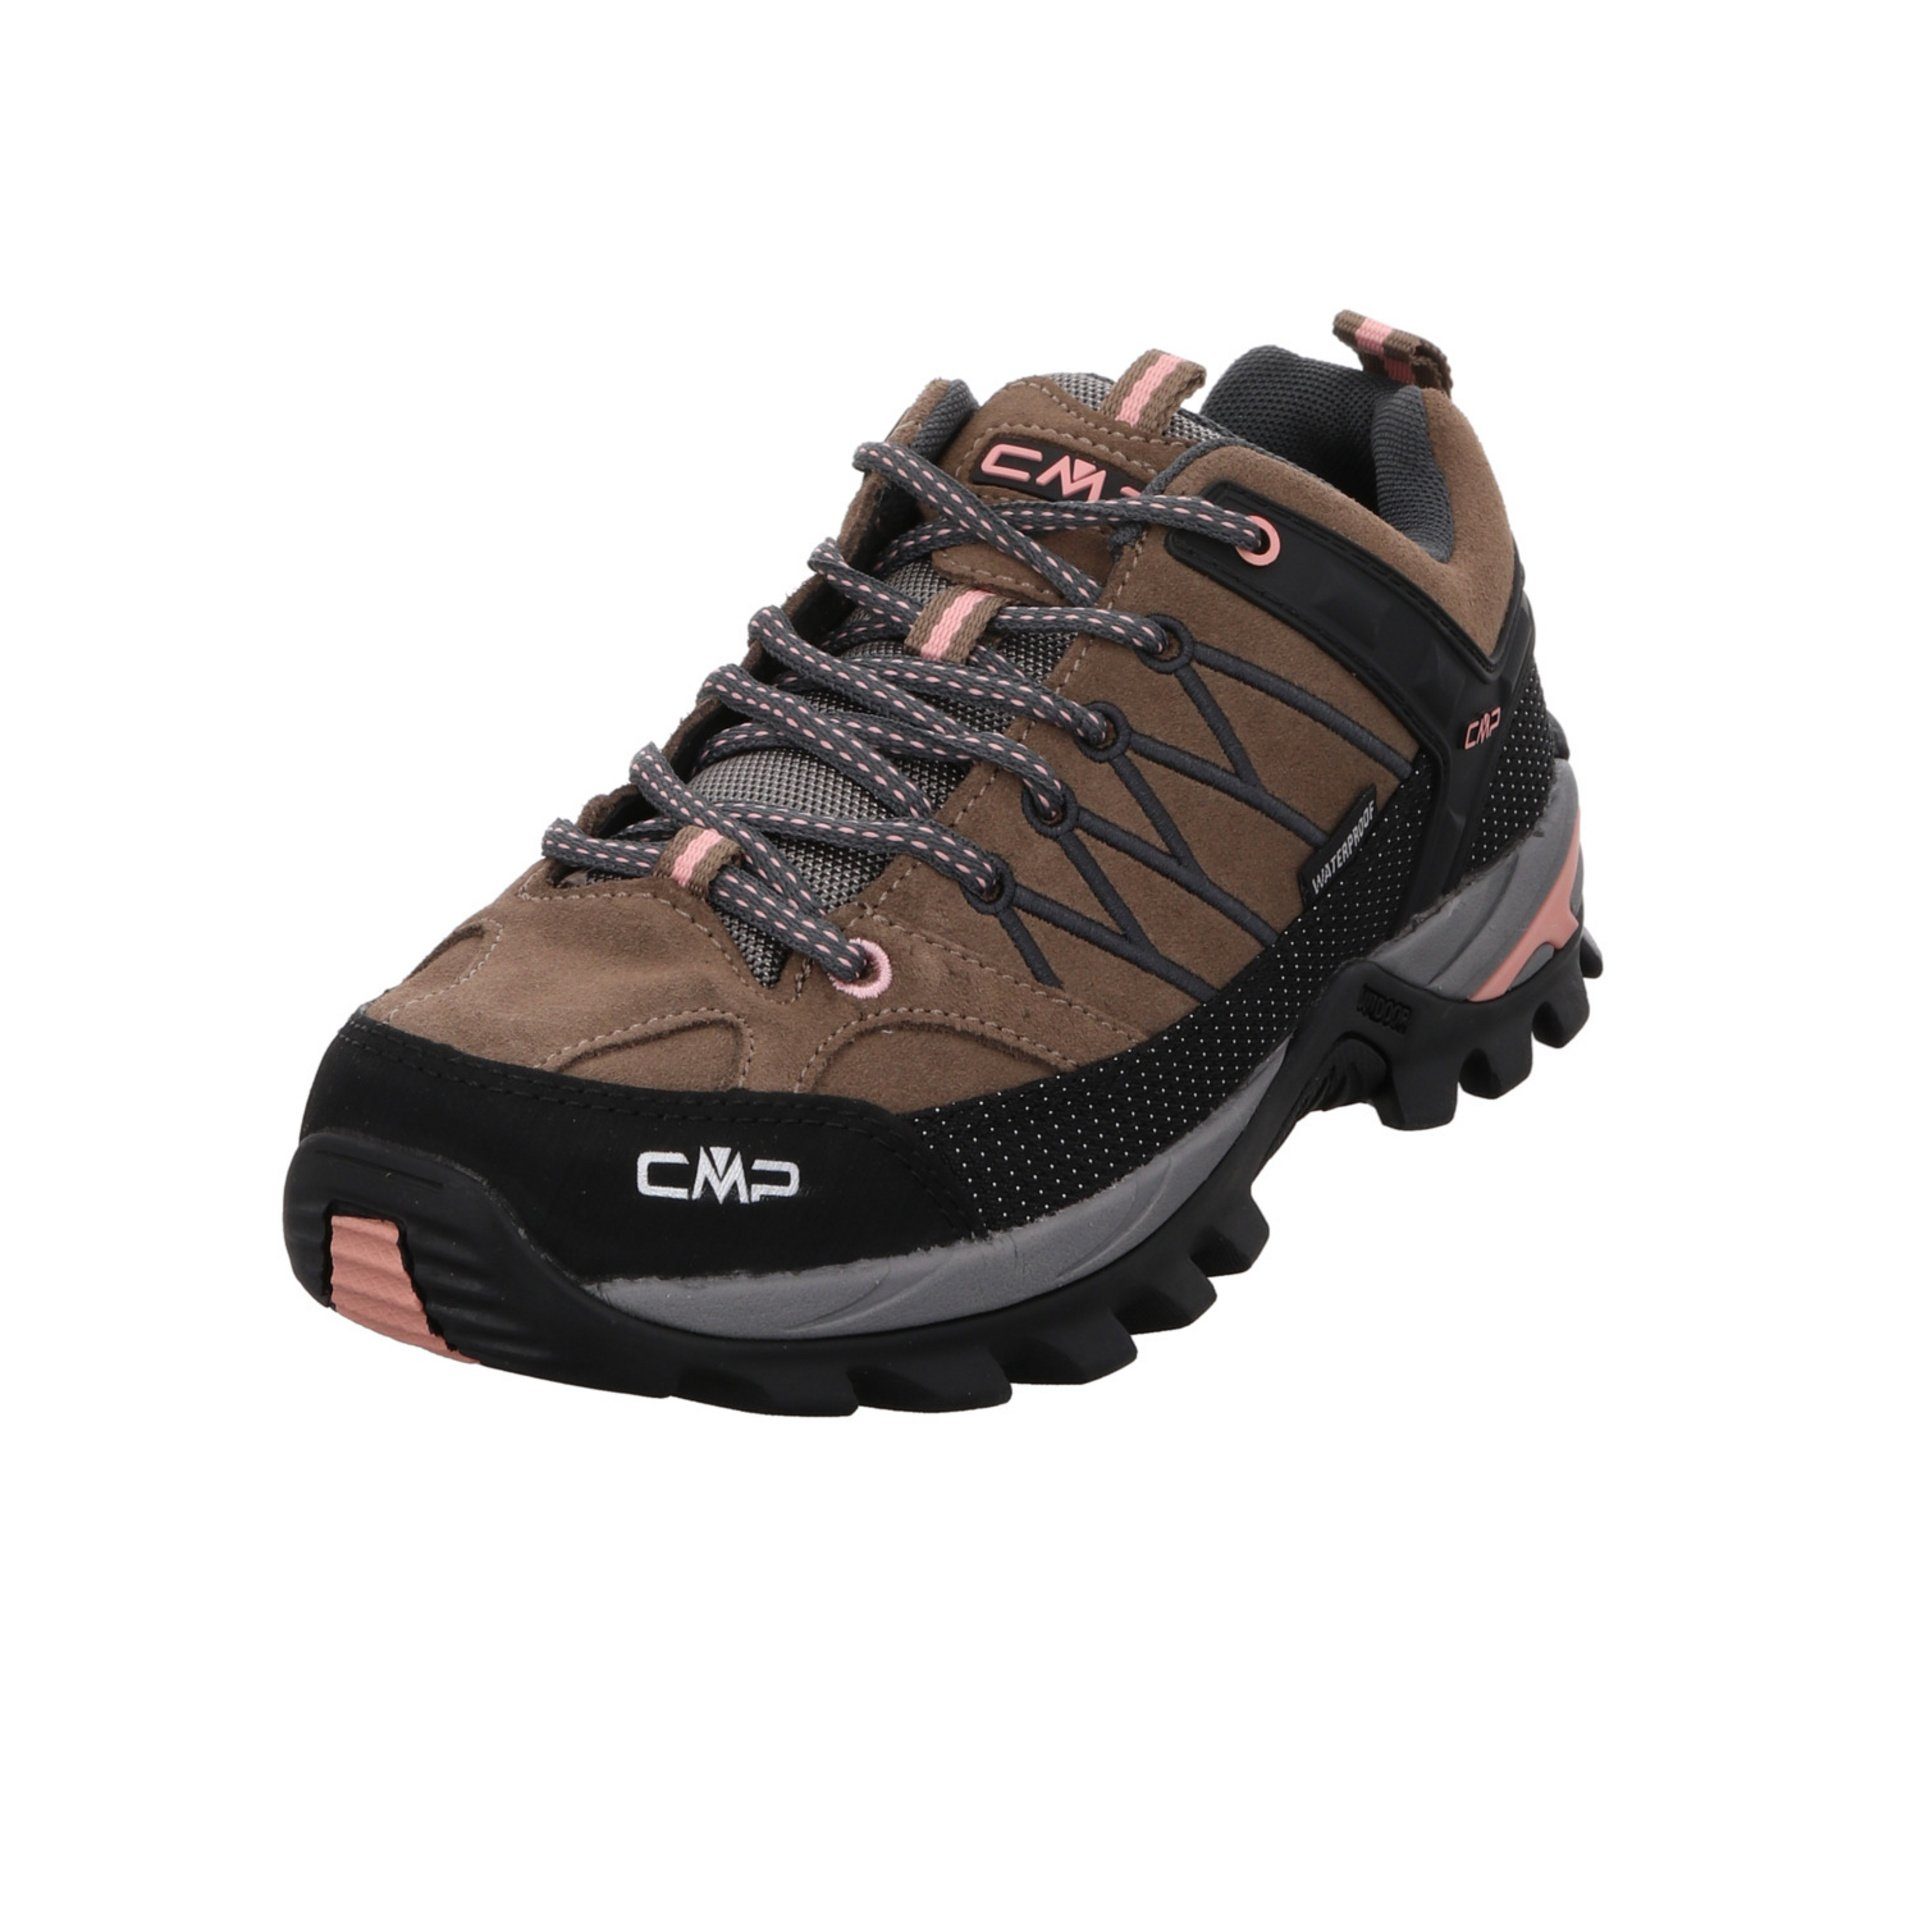 CMP Damen Schuhe Outdoor Rigel Low Outdoorschuh Outdoorschuh Leder-/Textilkombination CENERE